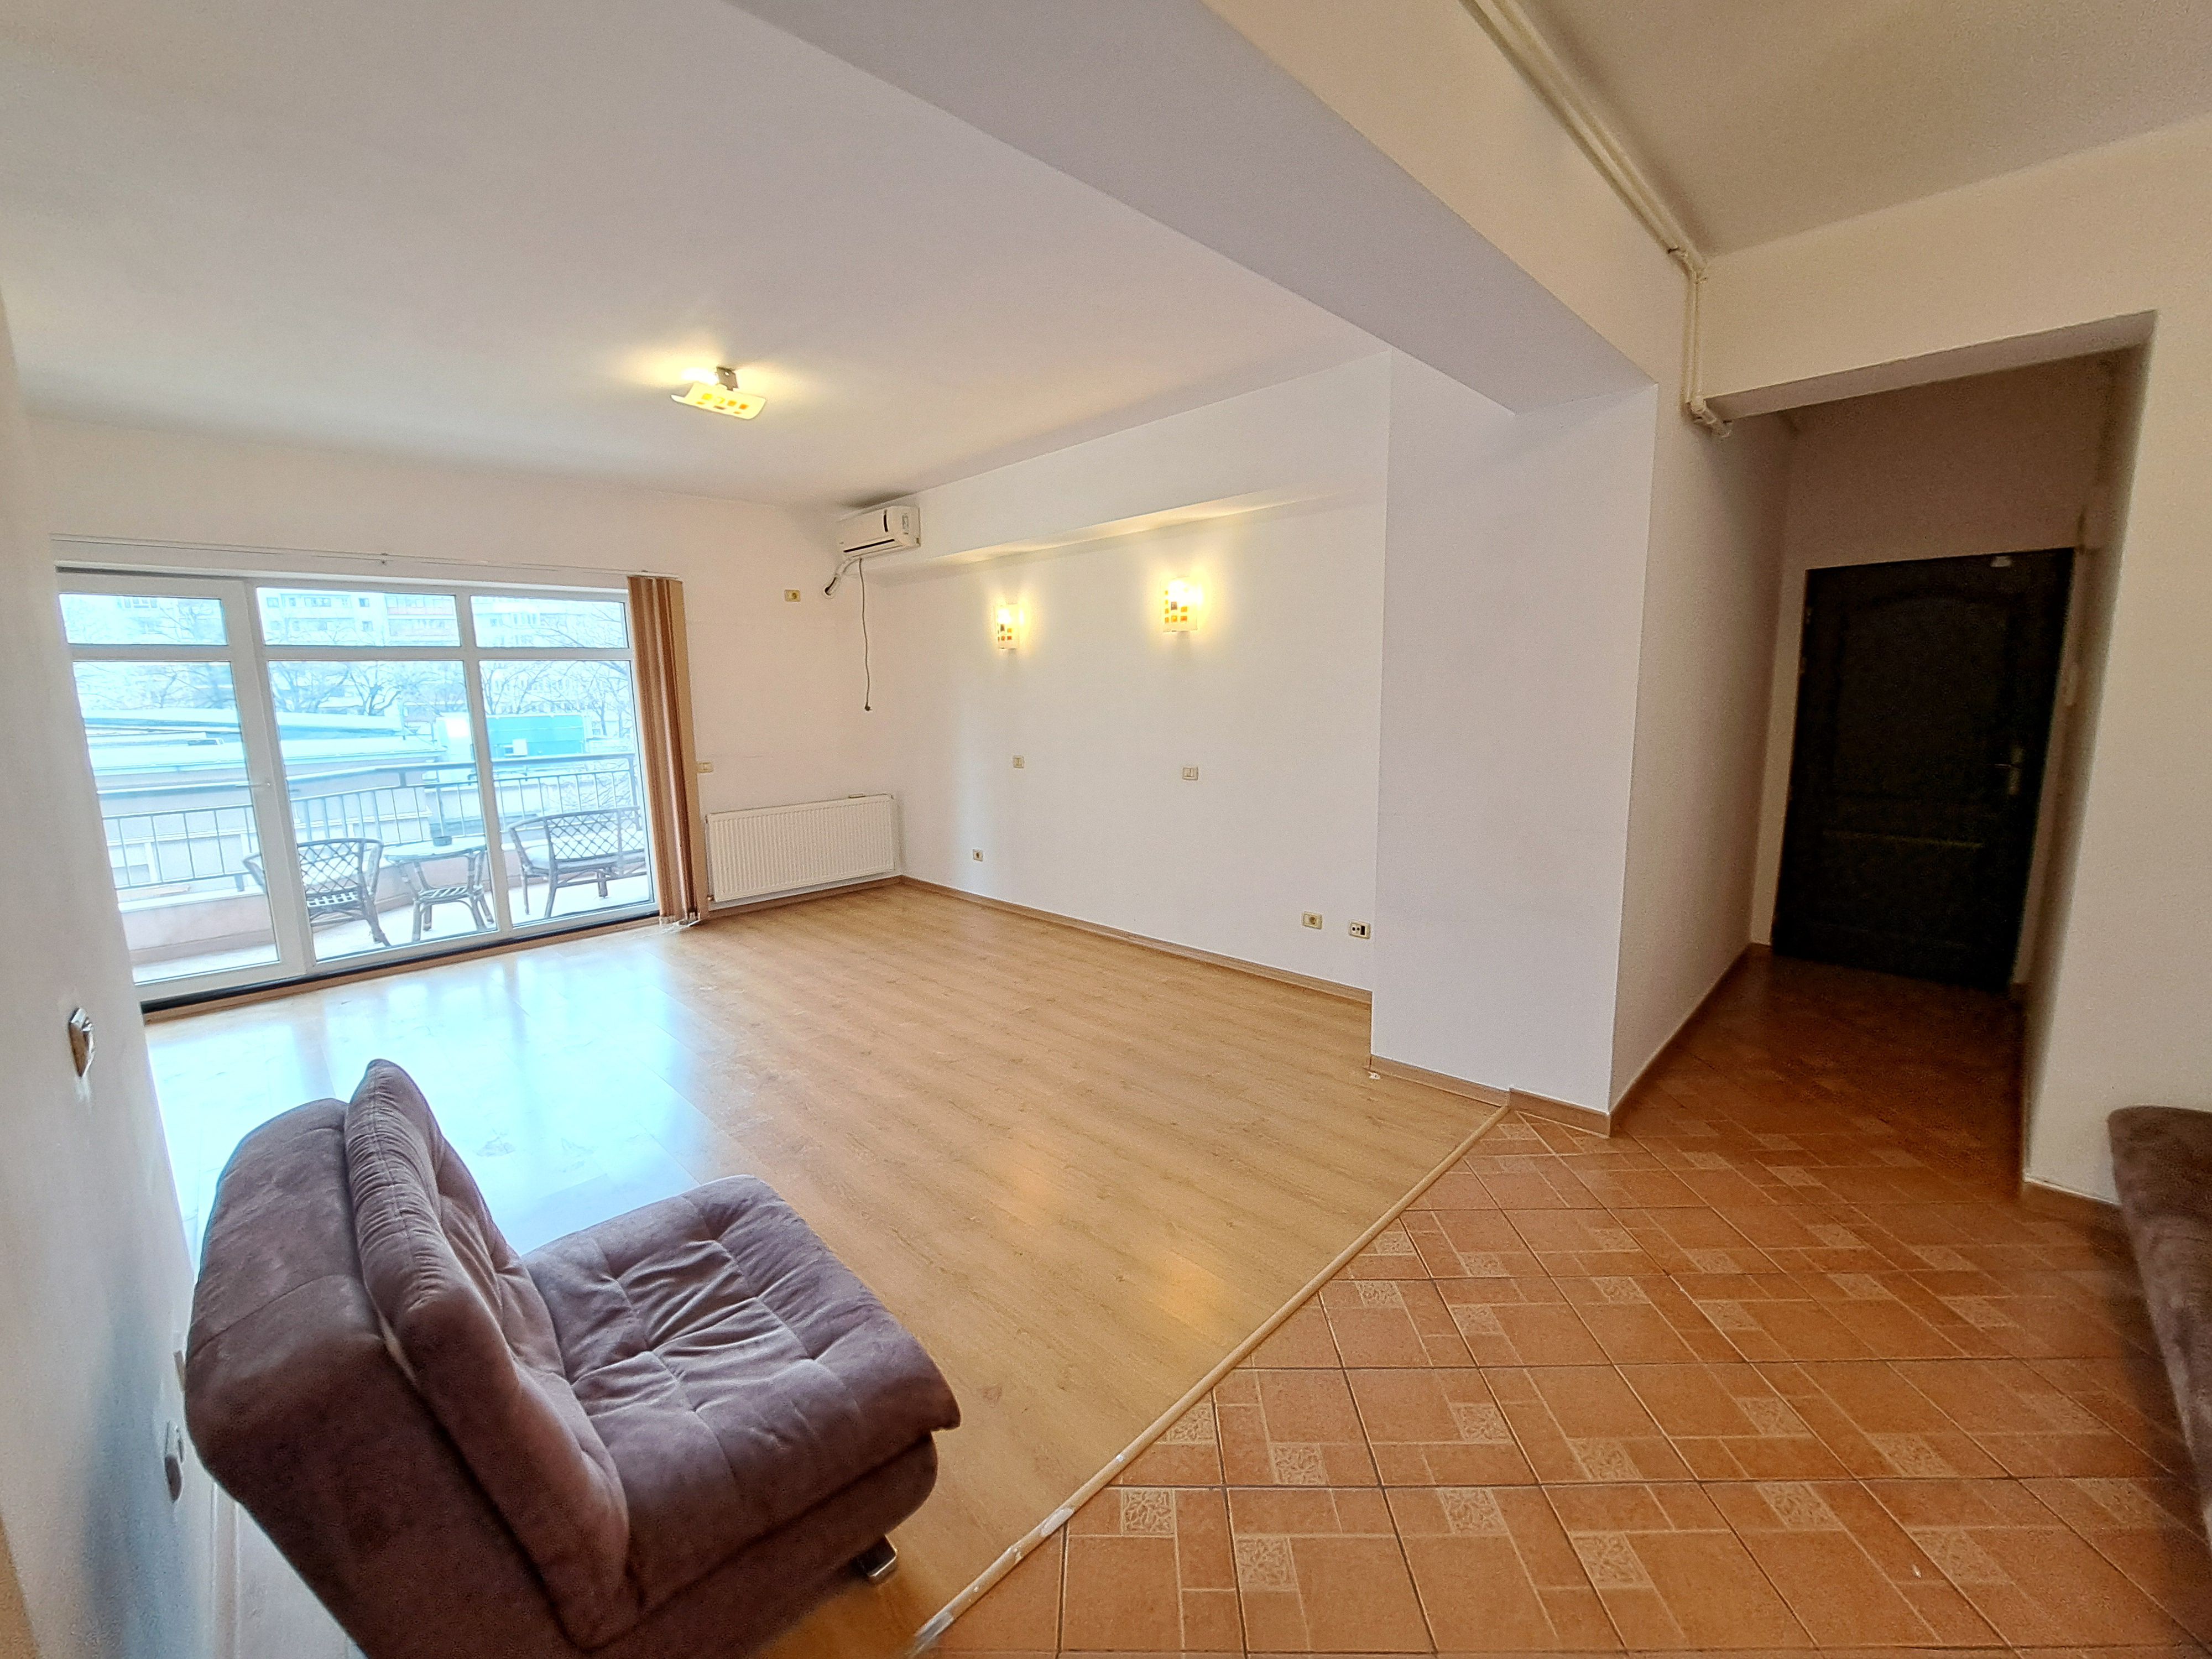 apartament cu 2 camere 85,86 mp - bd. unirii - piata alba iulia Bucuresti